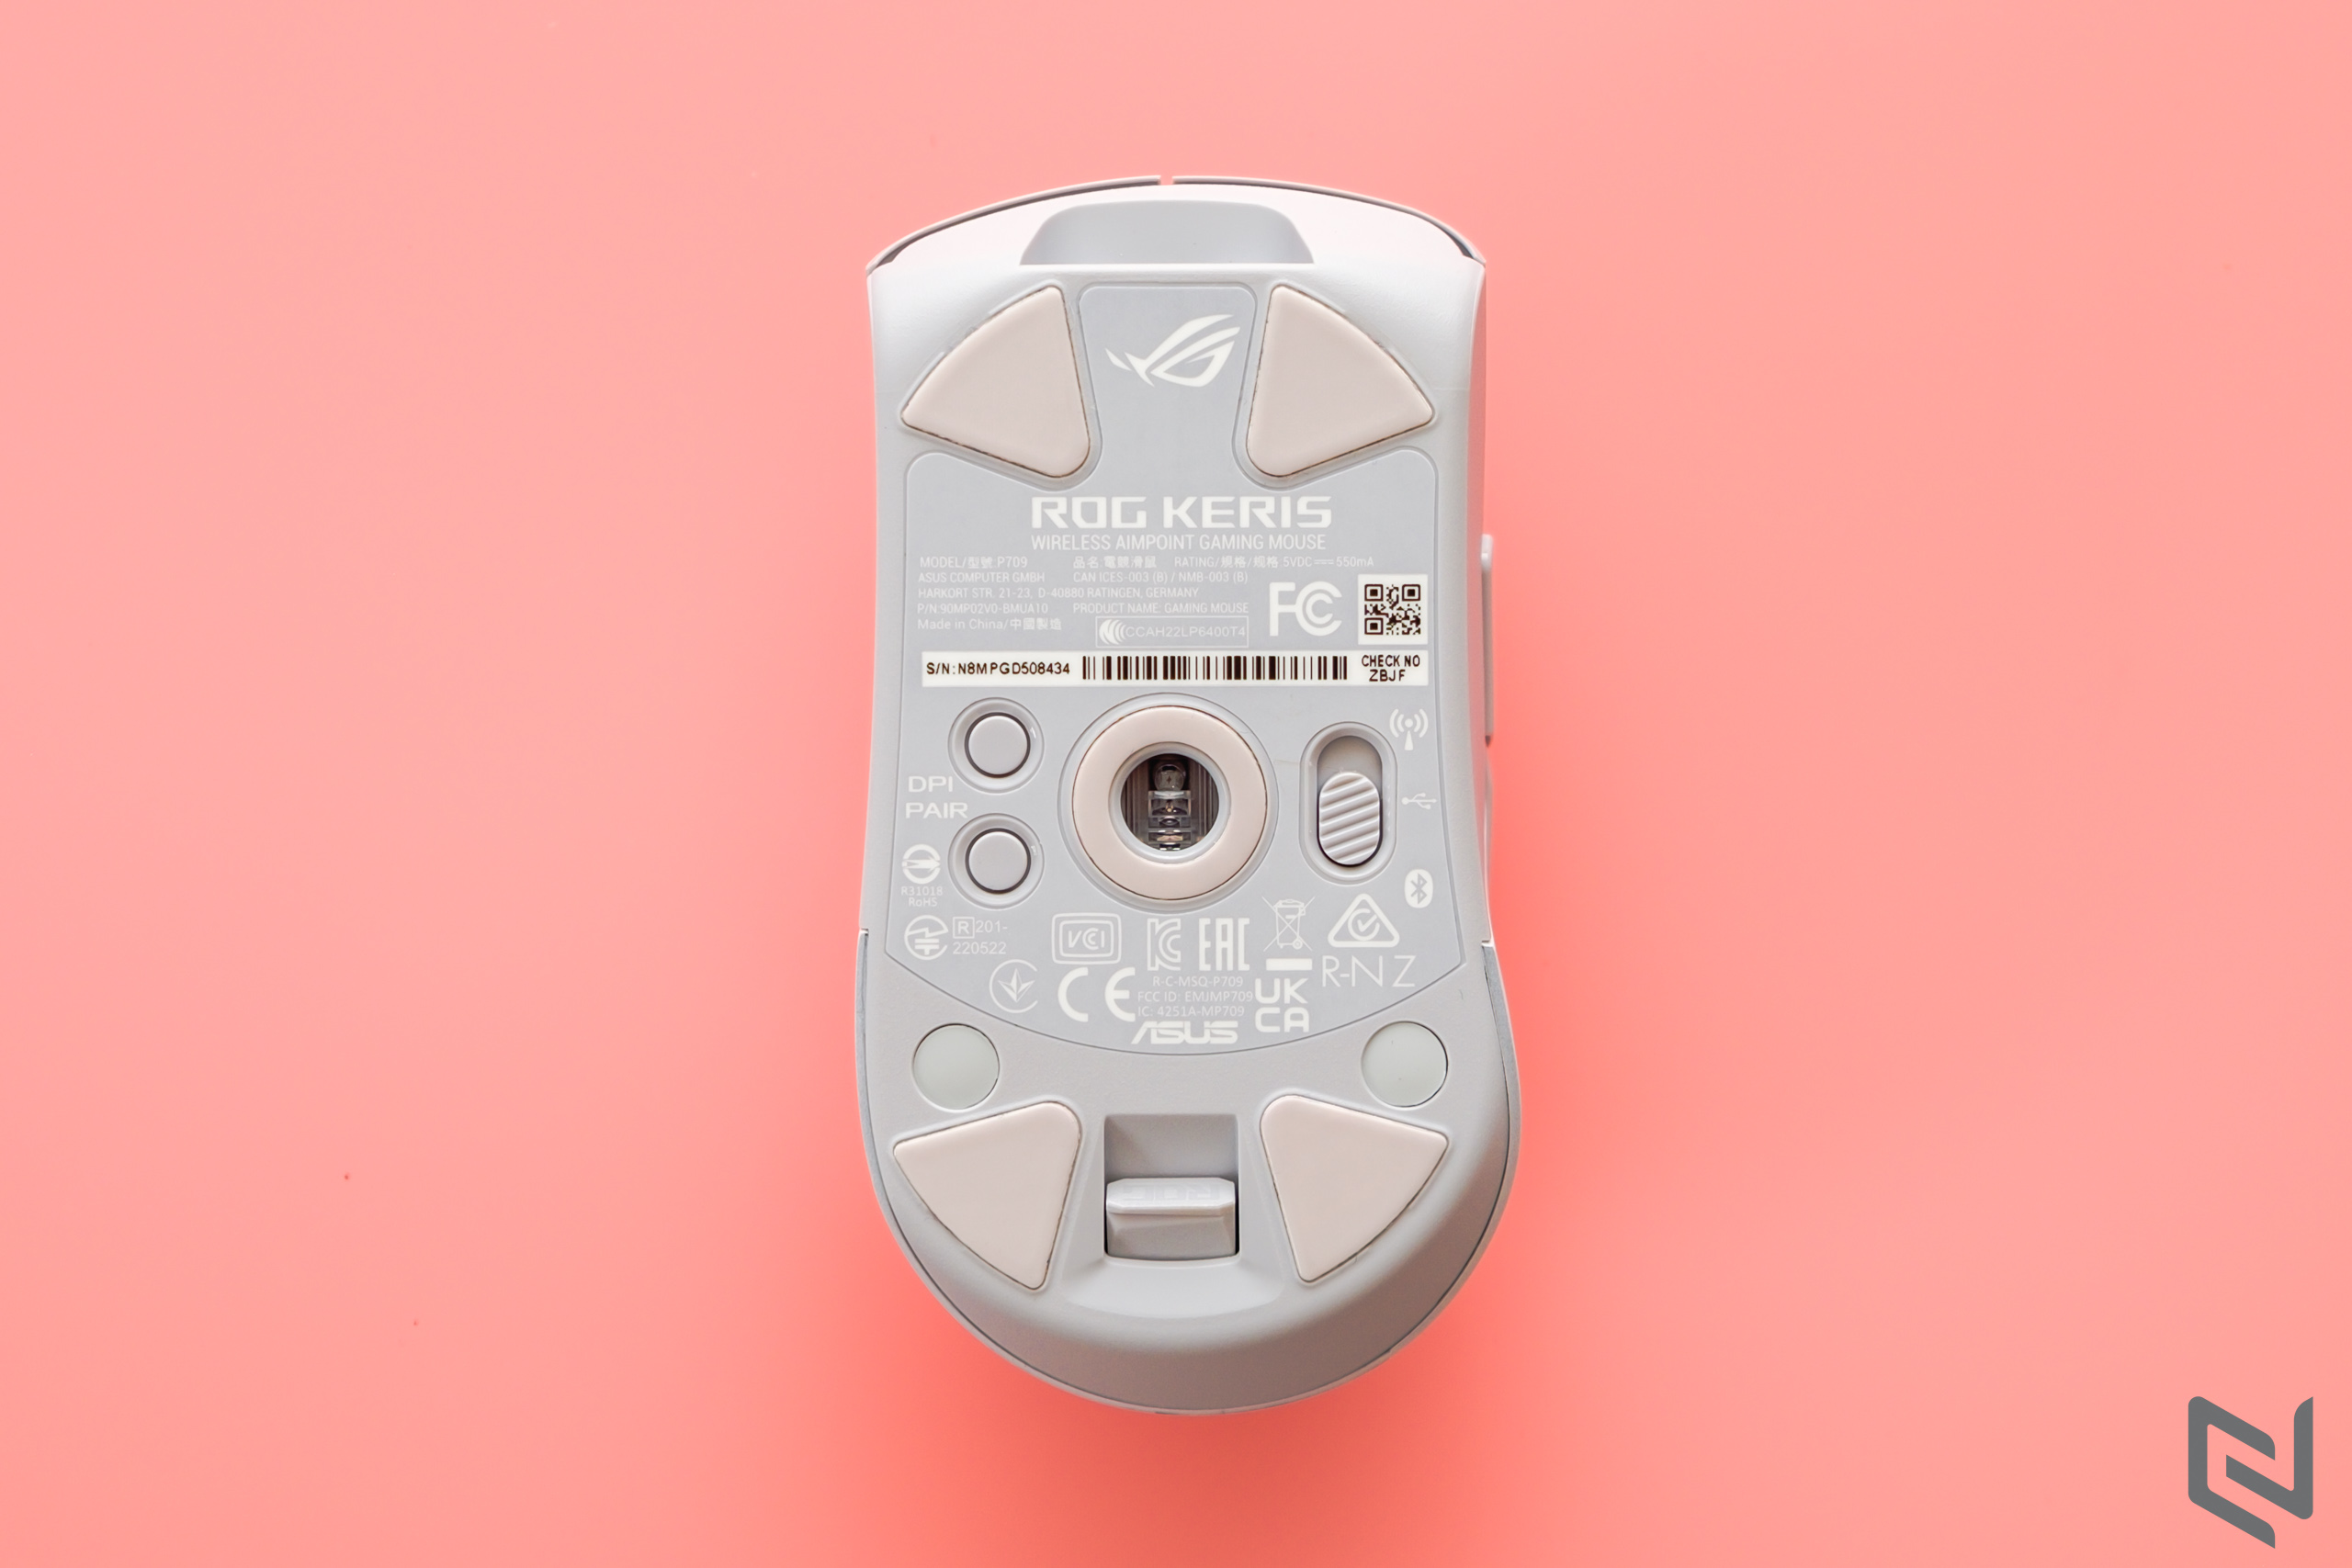 Trên tay chuột chơi game không dây ASUS ROG Keris Wireless Aimpoint: Cảm biến siêu nhạy và trọng lượng nhẹ dành cho game thủ FPS